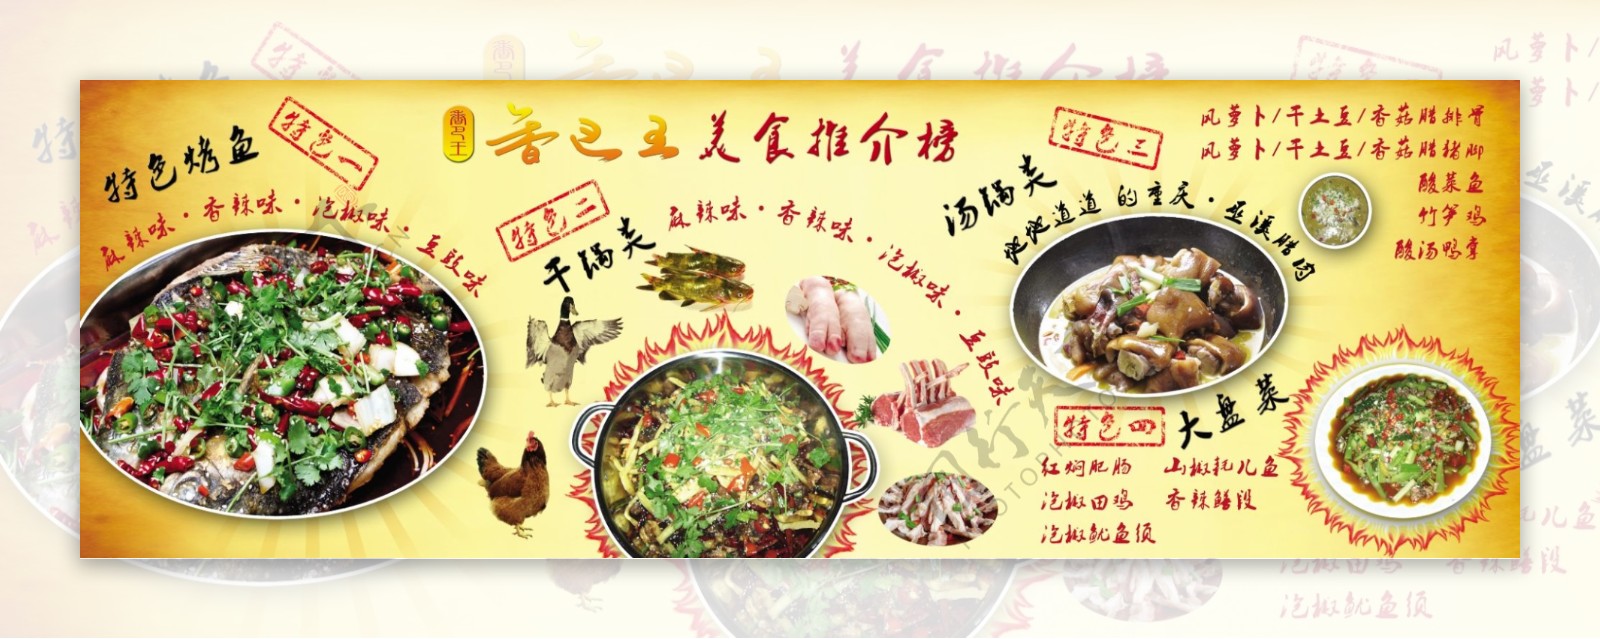 香巴王菜单图片